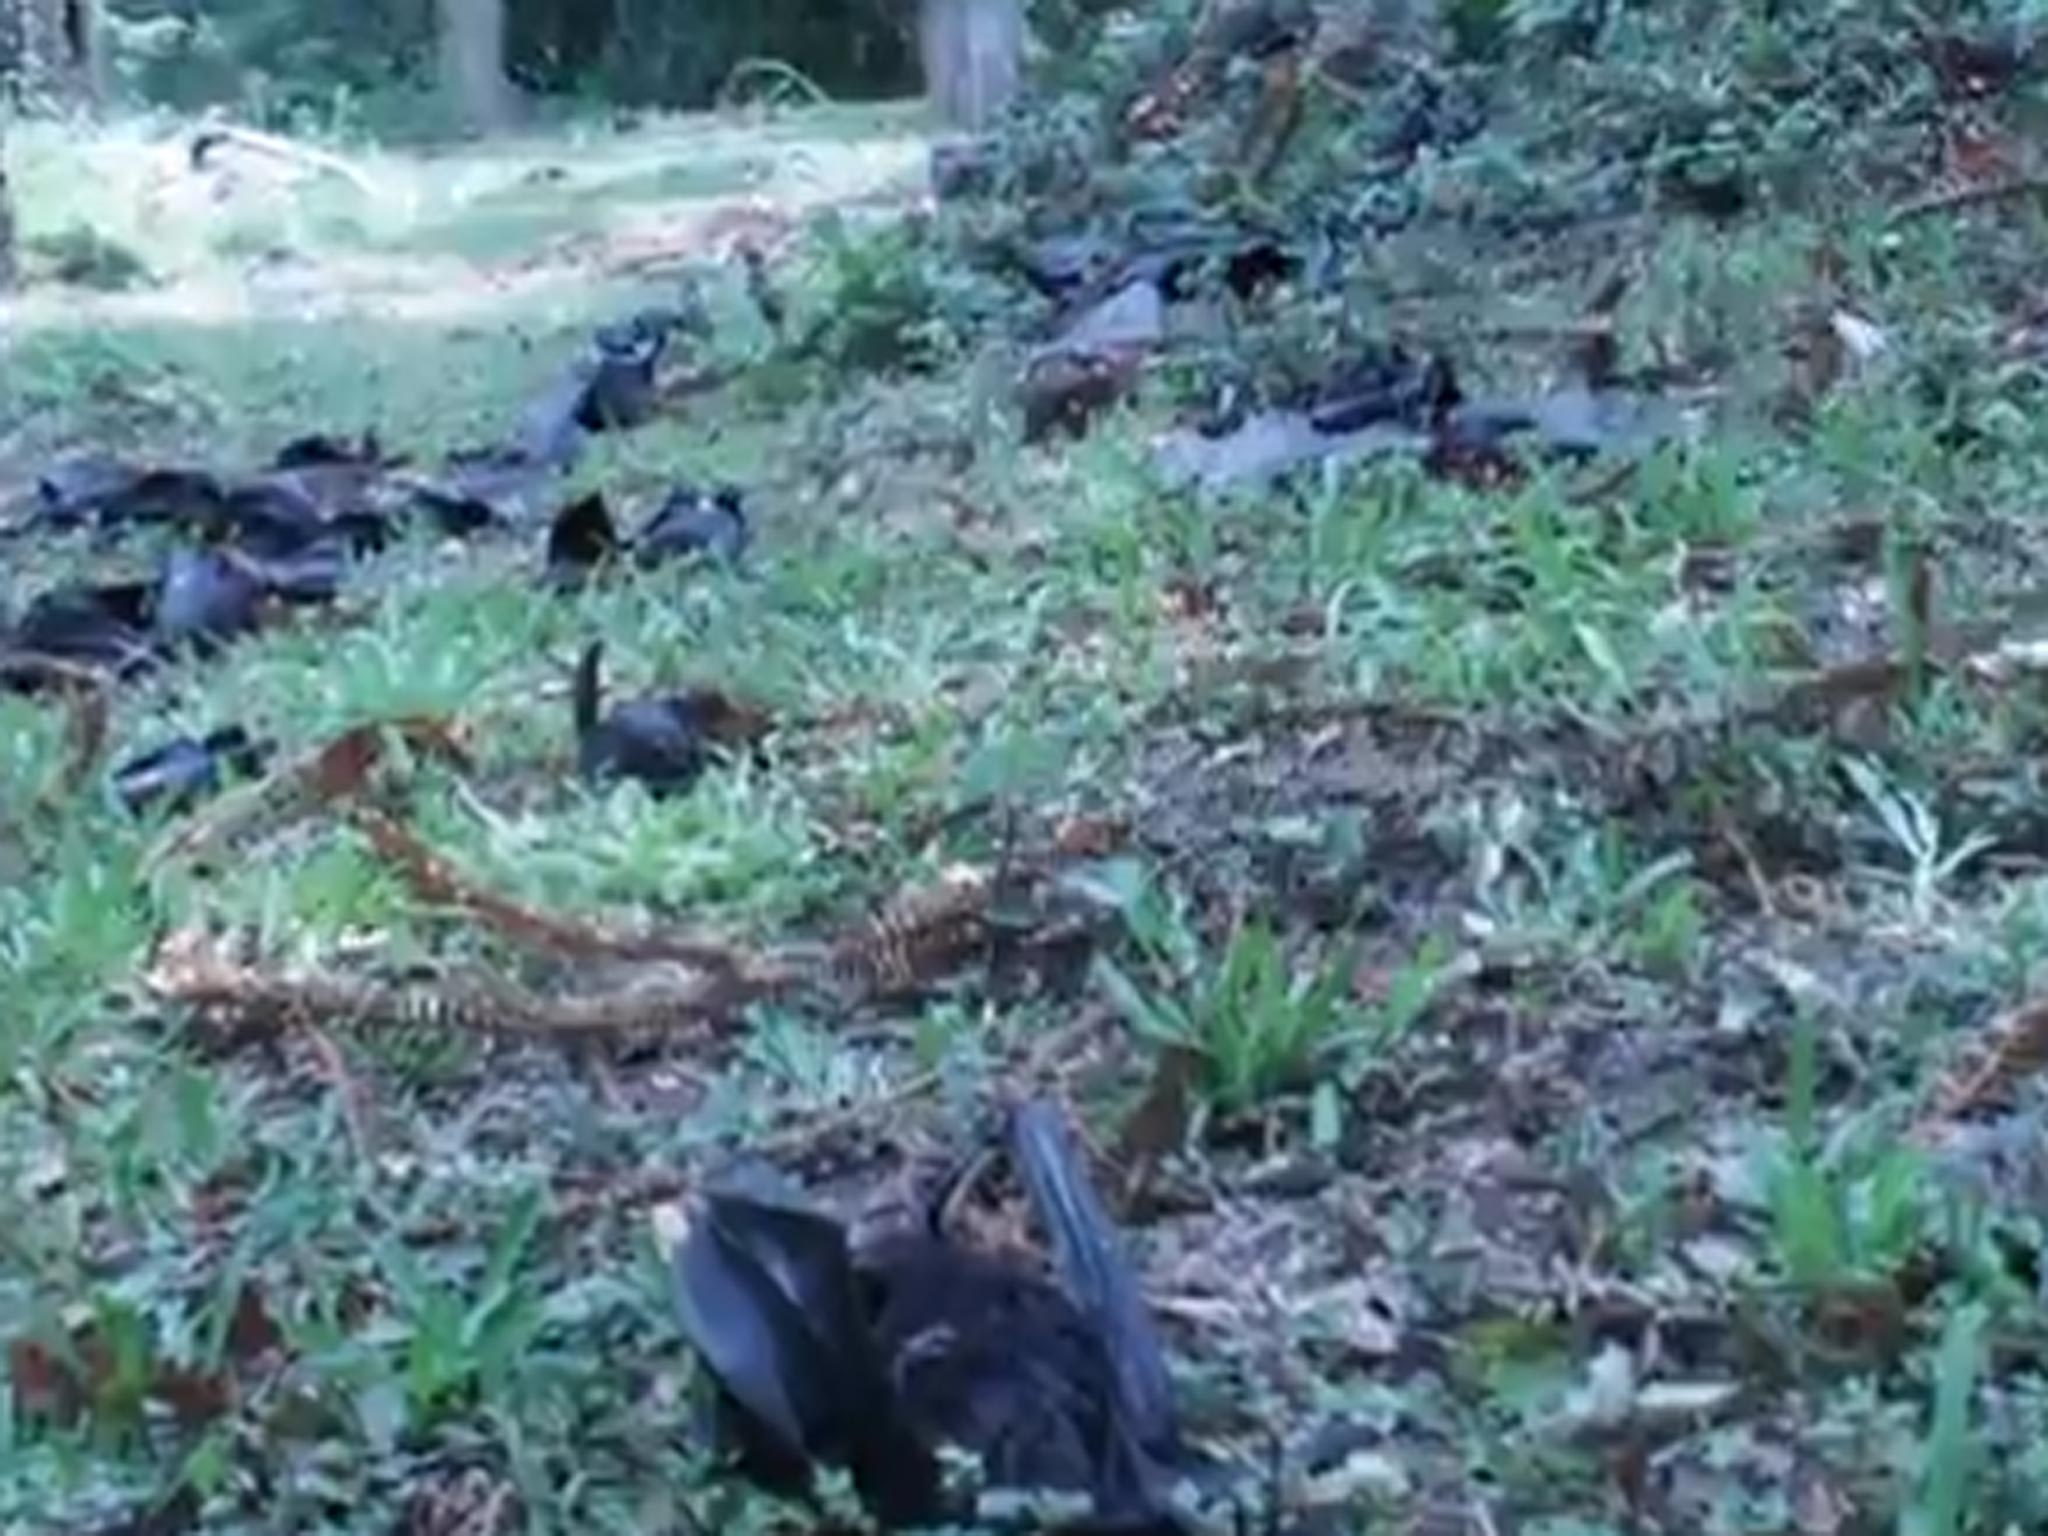 Dead bats fall from the trees in Dayboro, Australia following a heatwave